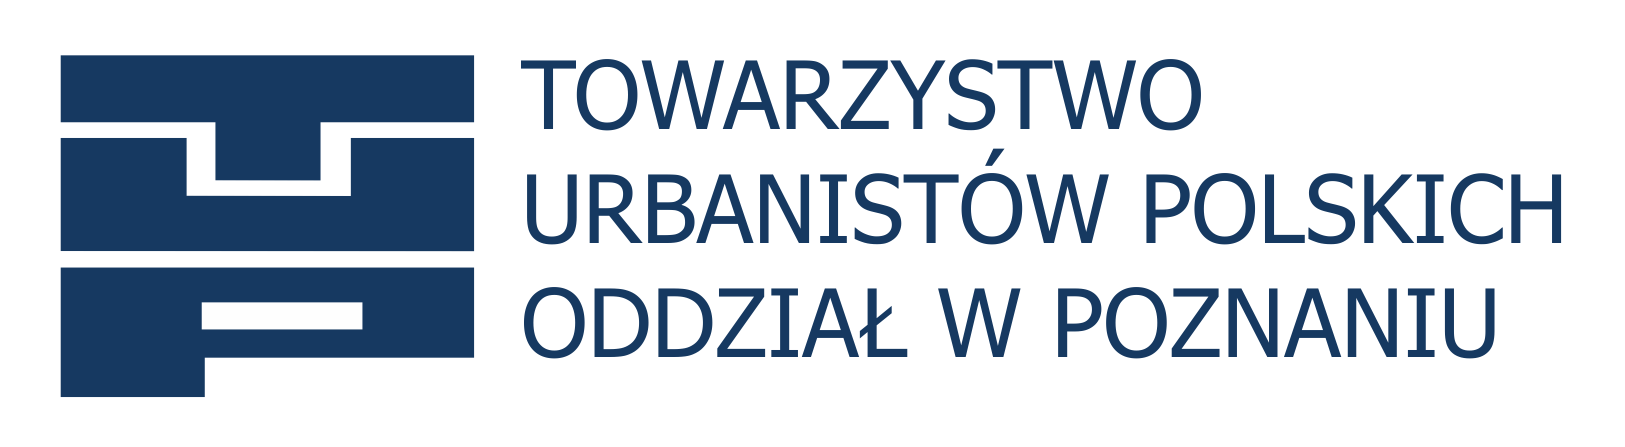 logo_TUP_Oddział Poznań